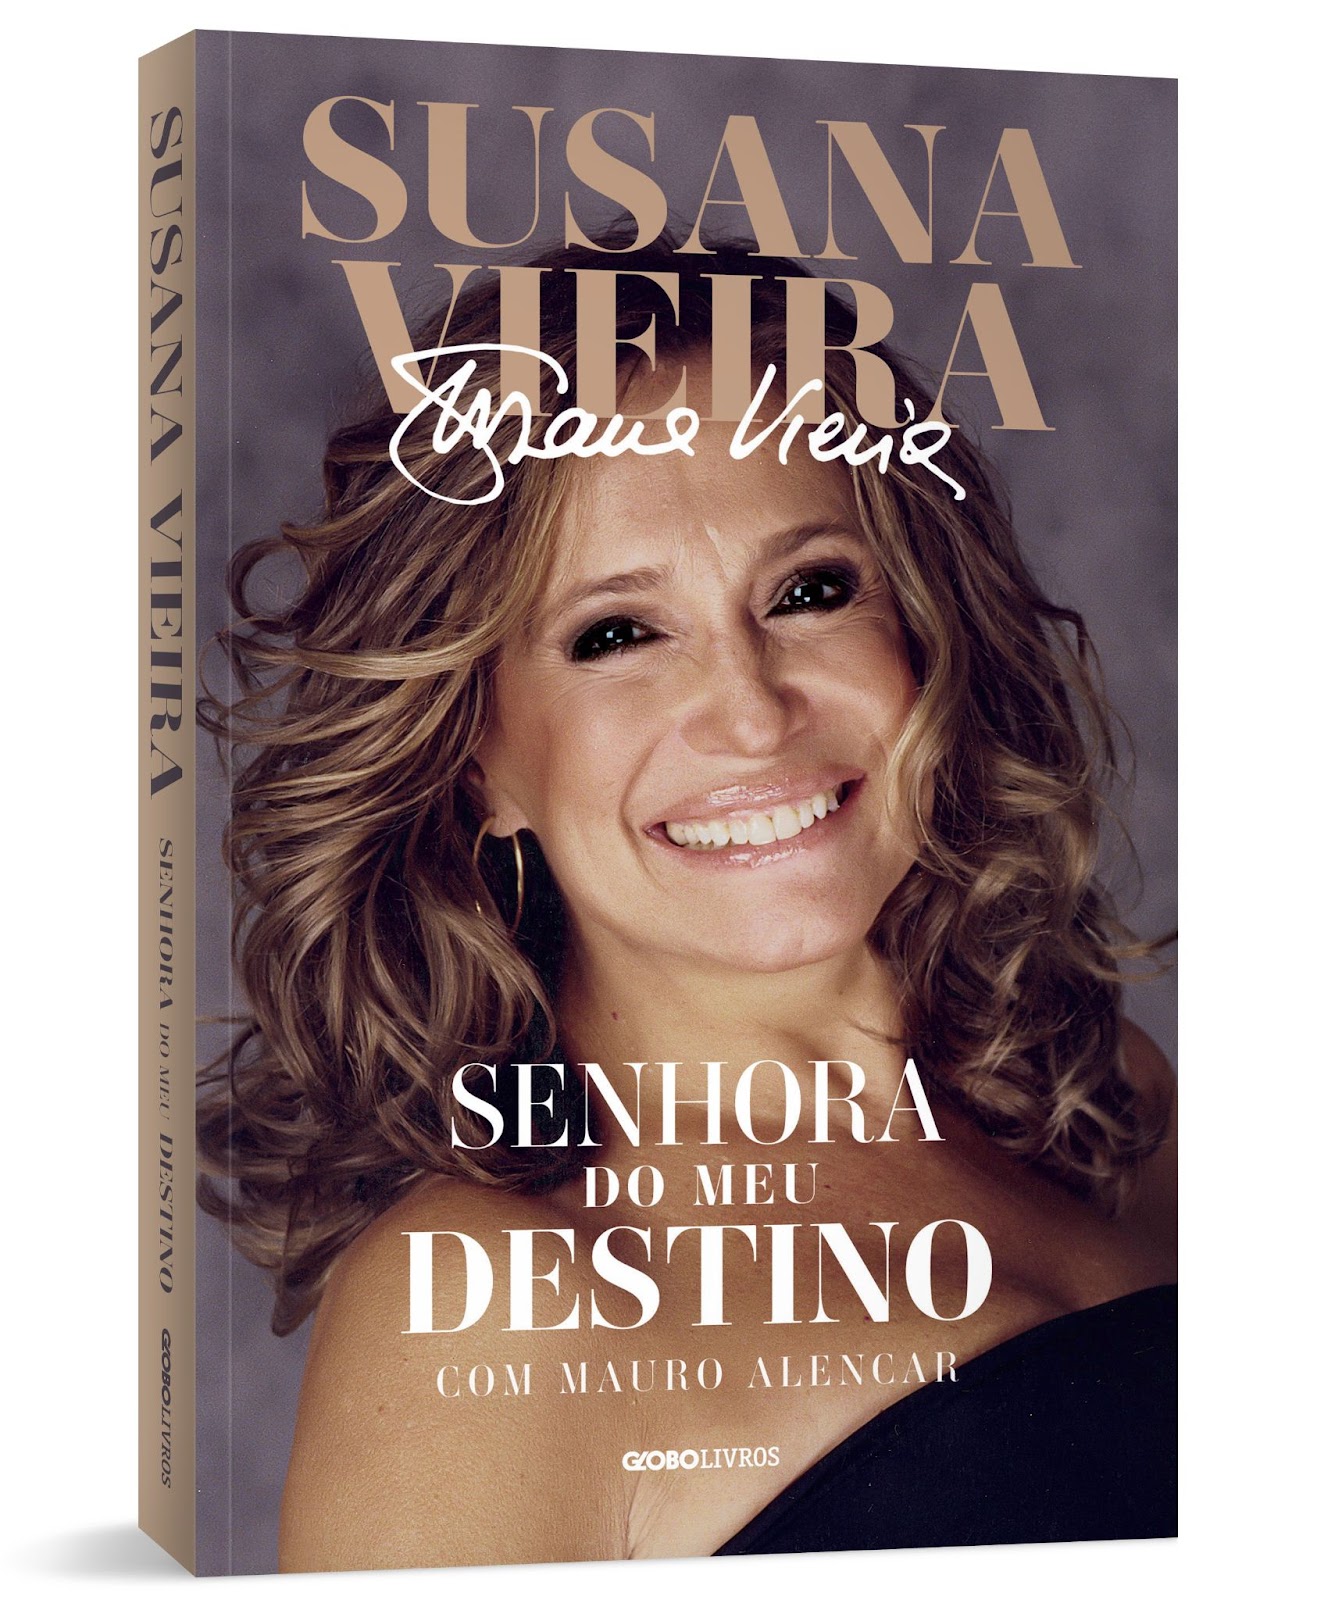 Nesta terça, 14/05, Susana Vieira lança sua biografia na Livraria Martins Fontes Paulista, em São Paulo